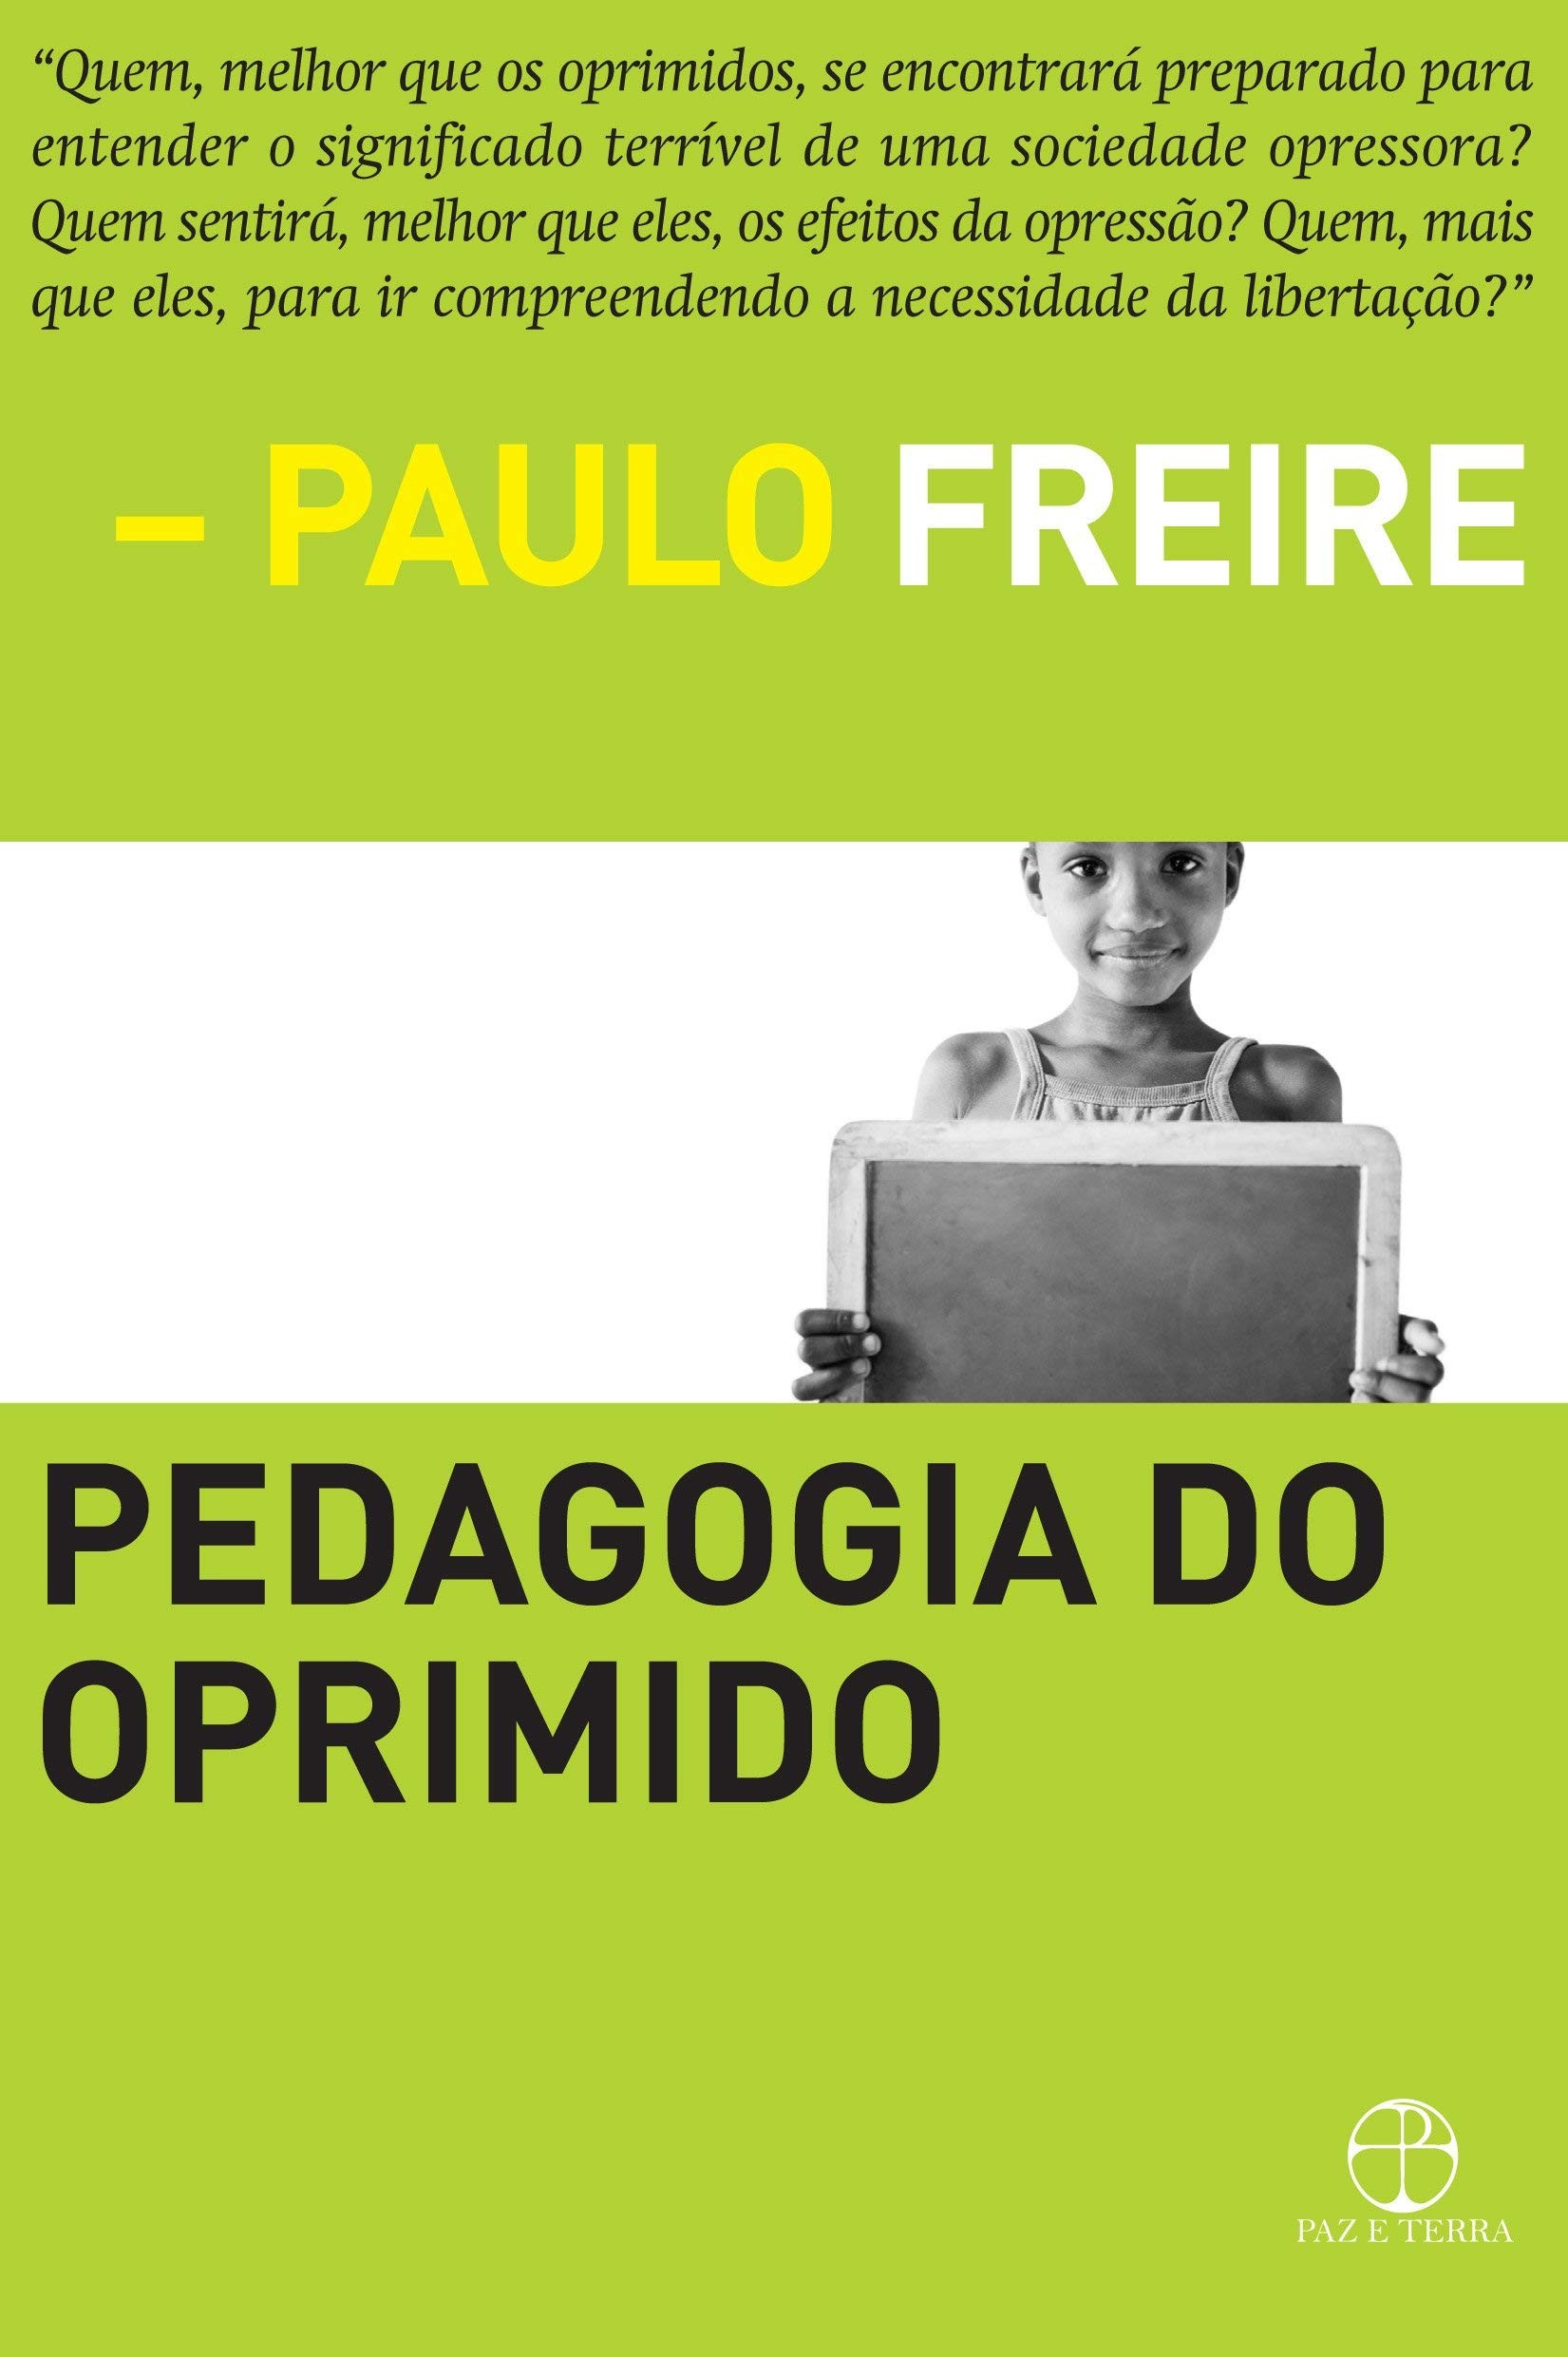 Pedagogia do oprimido, de Paulo Freire (Foto: Divulgação)